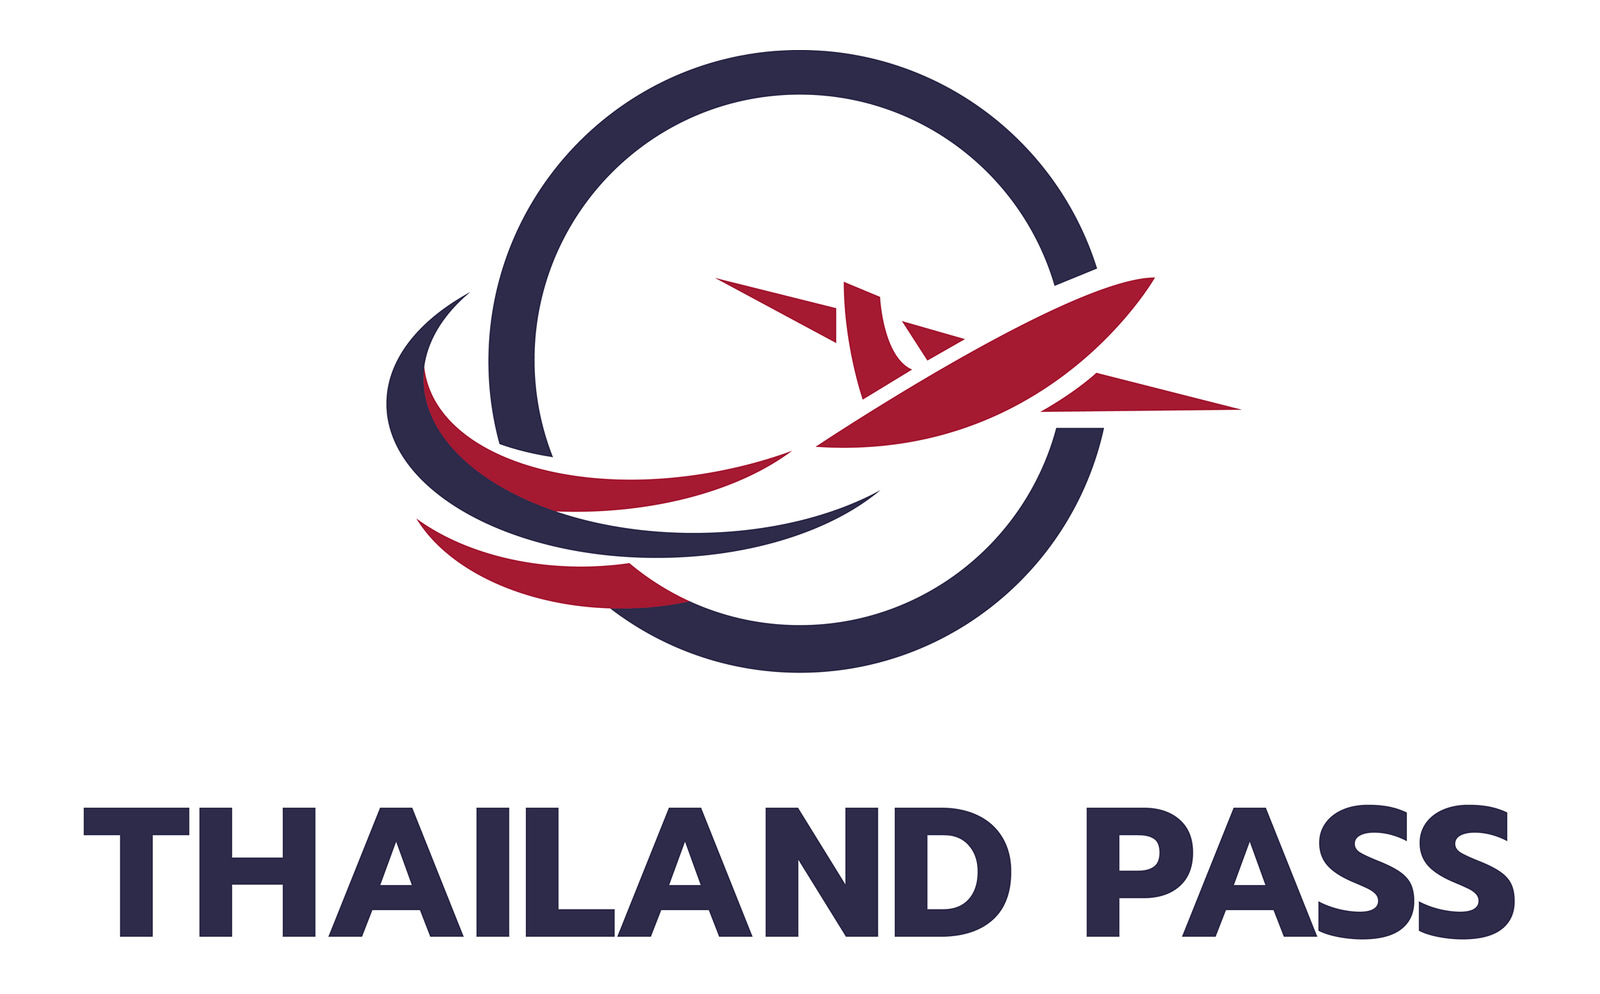 タイ観光大臣、2022年6月1日からの「タイランドパス」廃止を提案へ